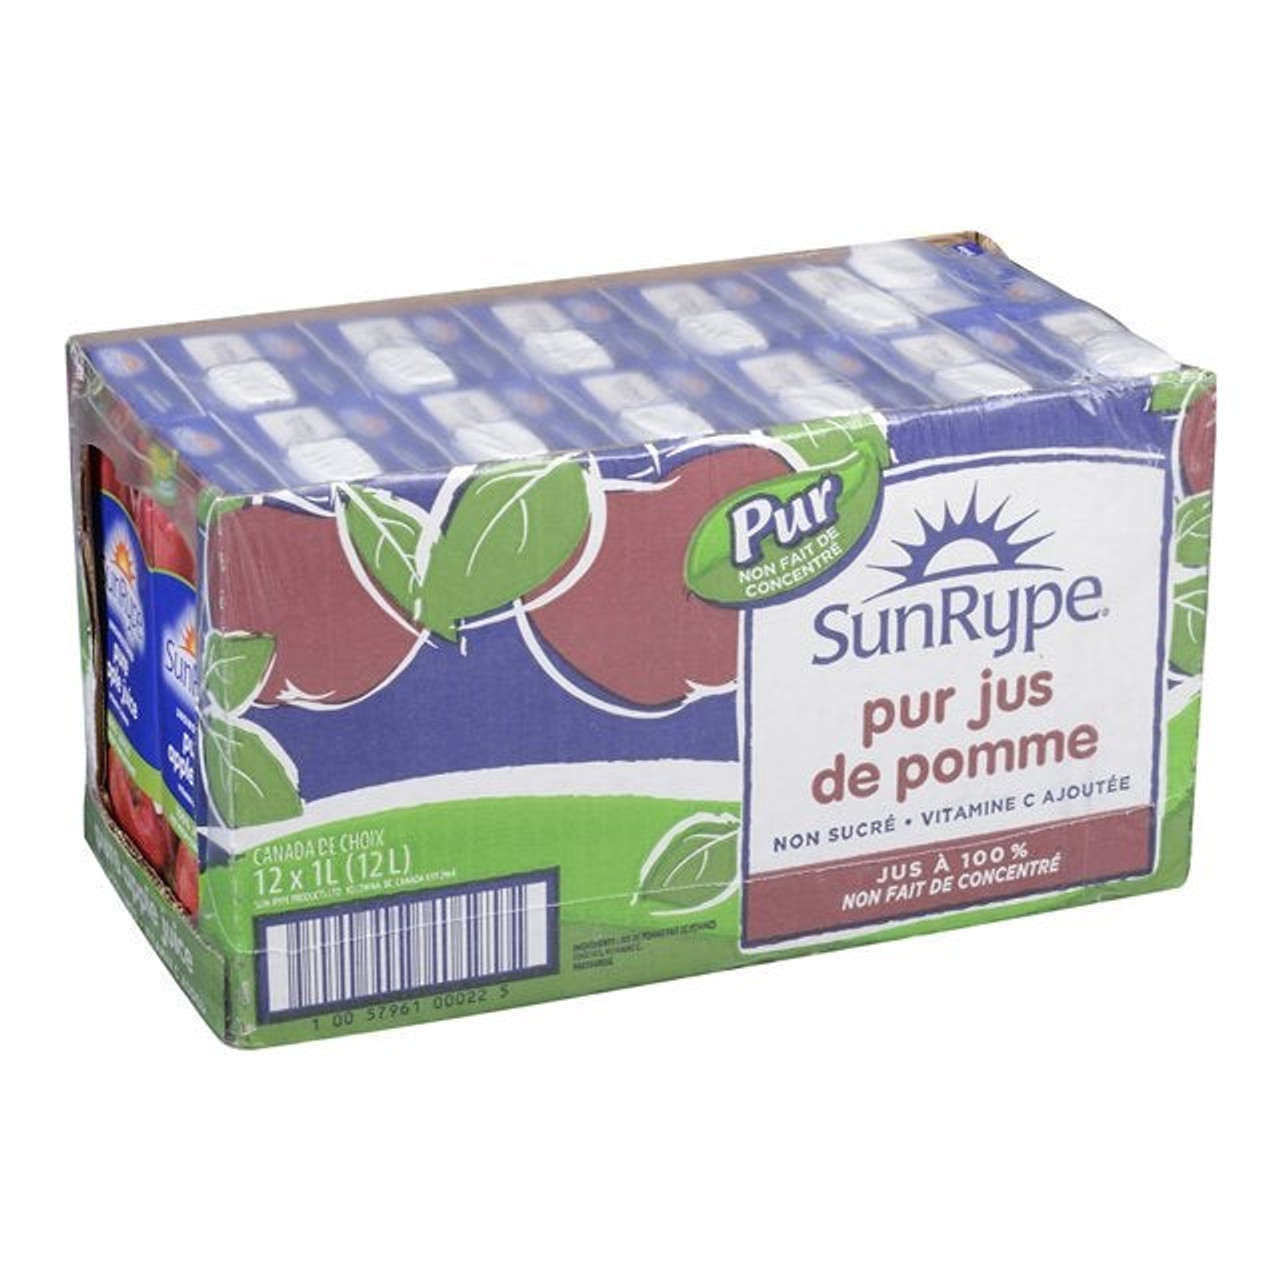 Sunrype Pure Apple Juice, Nfc 1L | 1L/Unit, 12 Units/Case